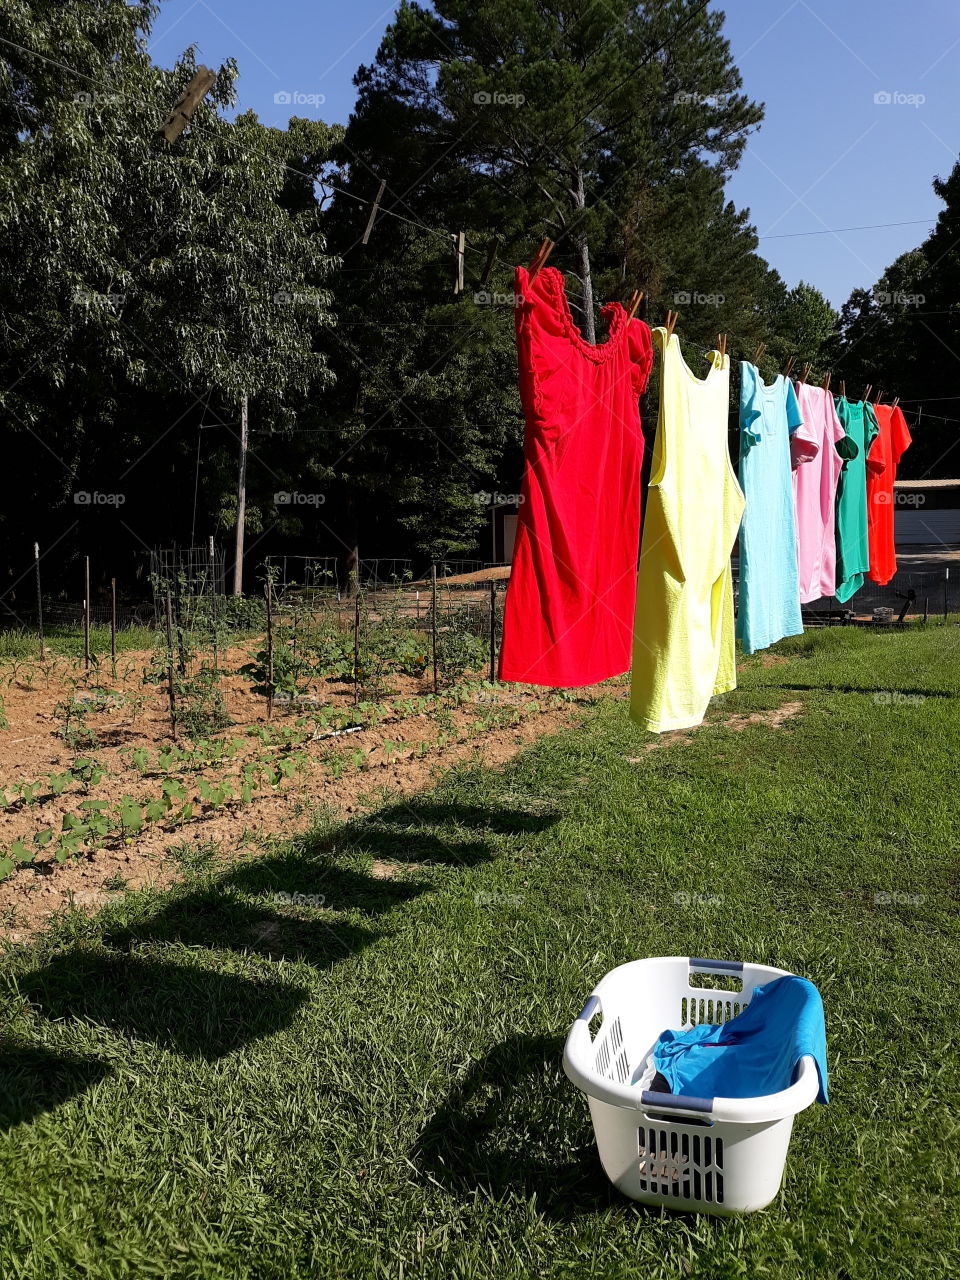 Garden & Laundry - Morning Work